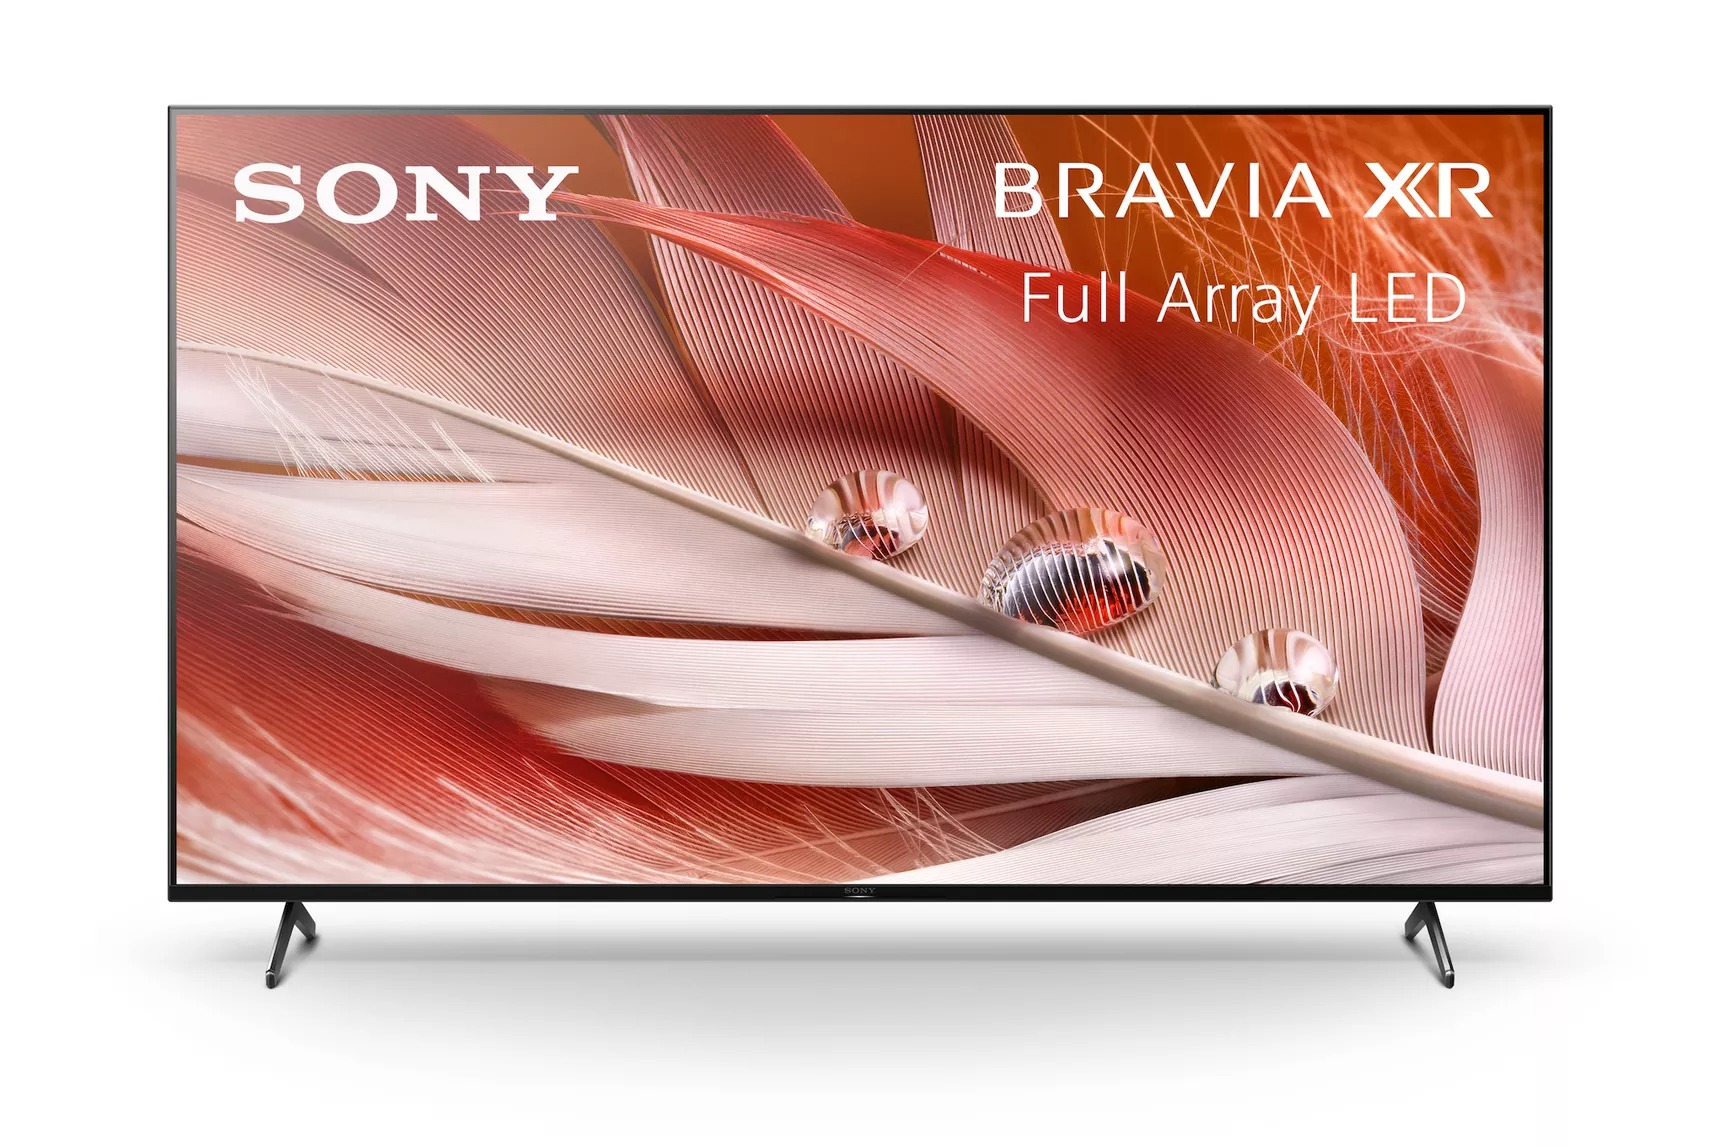 Sony 2021 TV serisi HDMI 2.1 ve Google TV gibi yenilikler ile geliyor